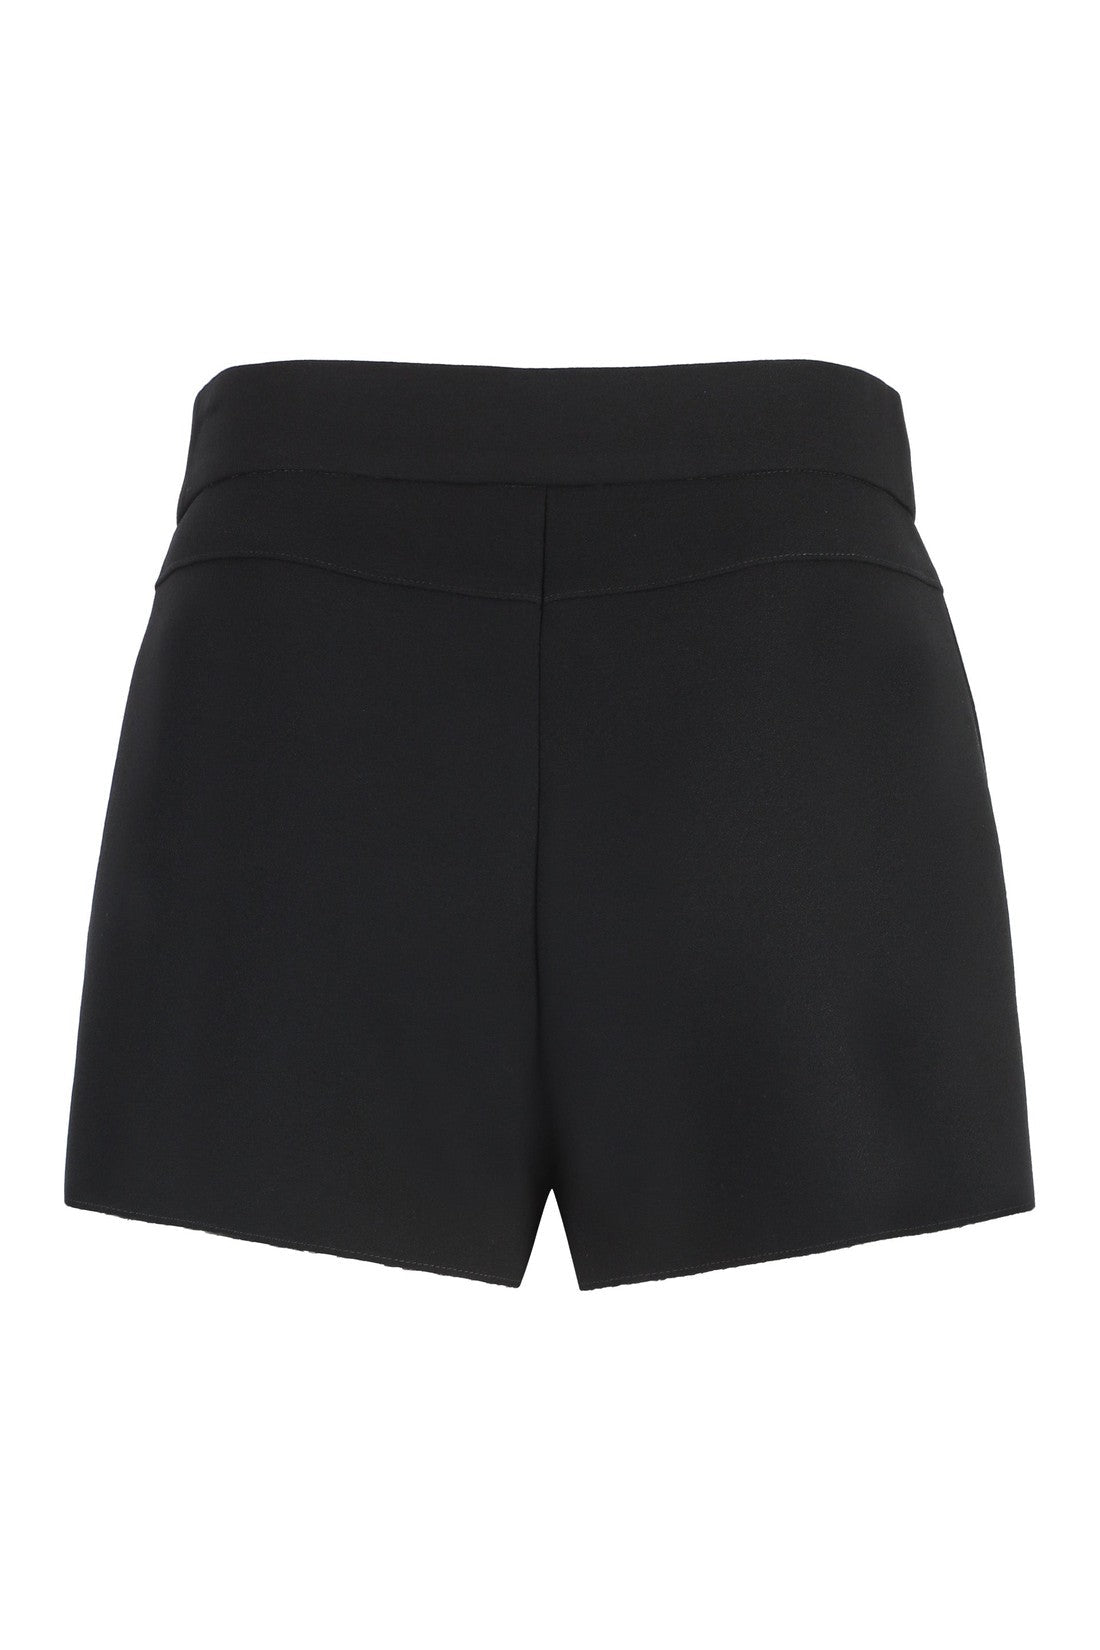 MSGM-OUTLET-SALE-Crêpe shorts-ARCHIVIST